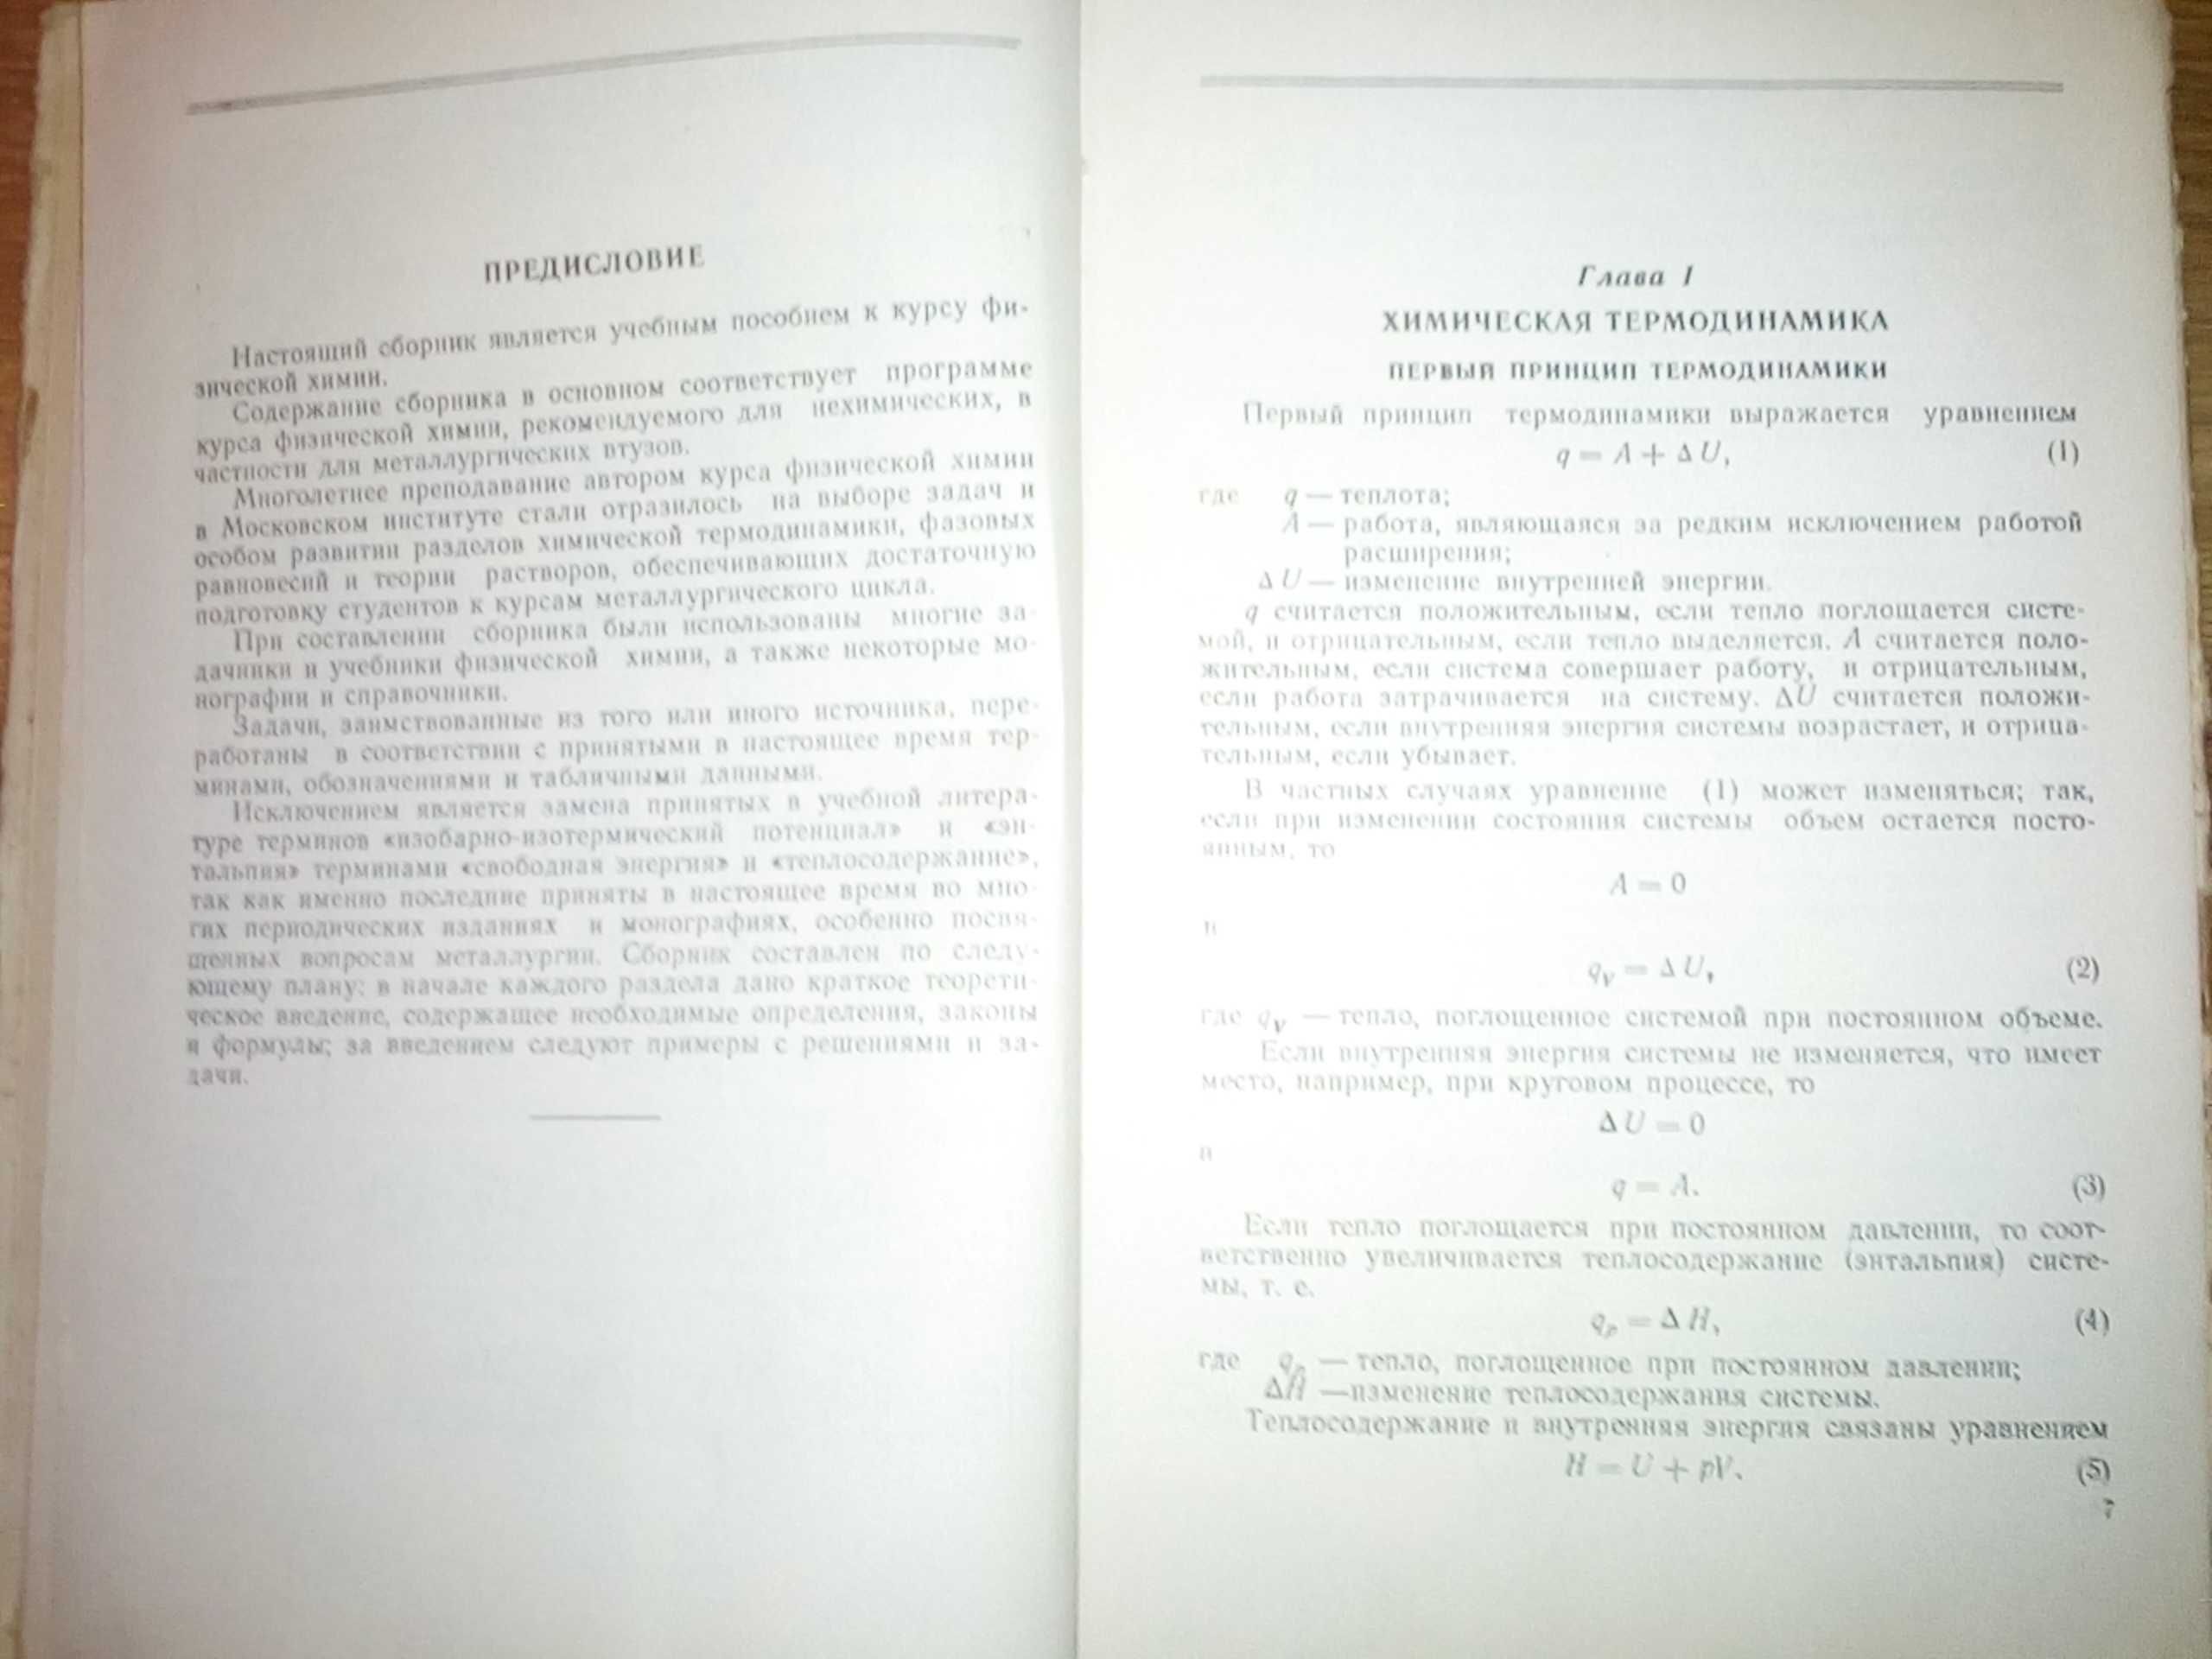 Пономарева К. С. - Сборник задач по физической химии